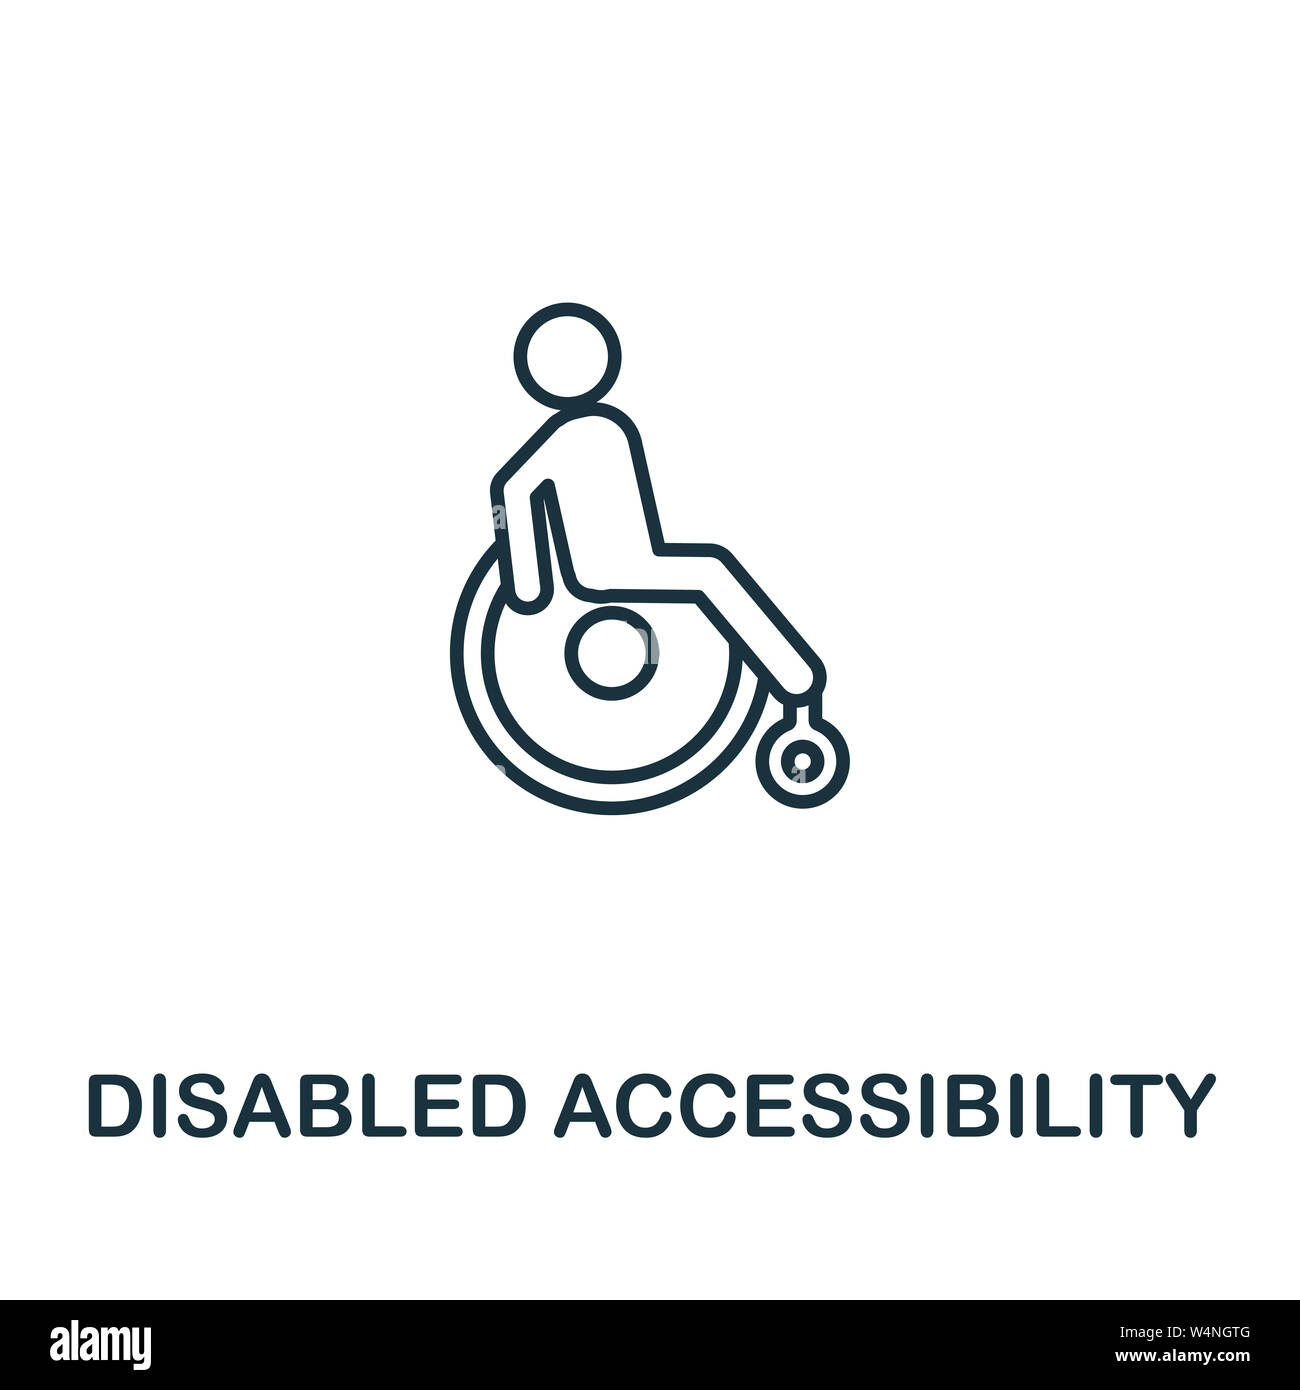 Behinderte Accessibility übersicht Symbol. Dünne Design von Stadt Elemente icons Collection. Pixel Perfect Symbol für Behinderte Symbol Eingabehilfen. Web Stockfoto